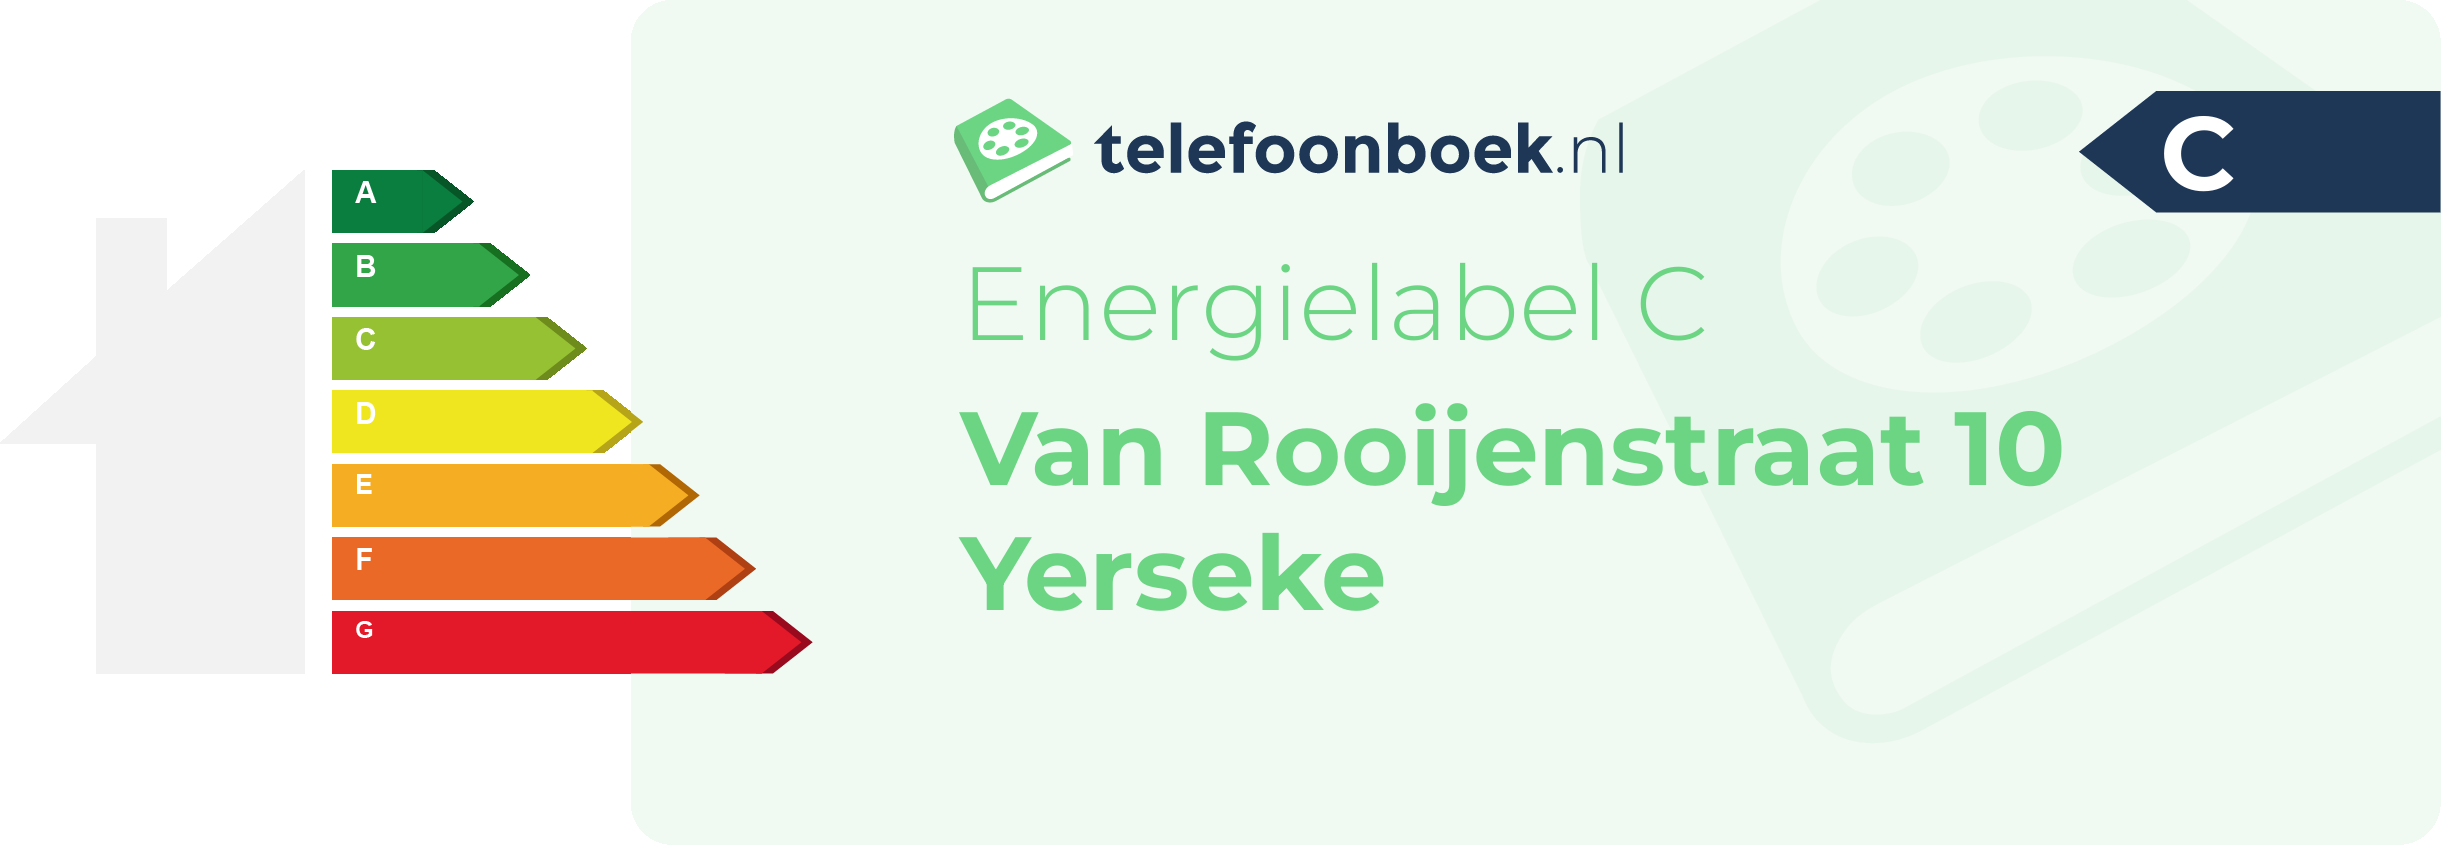 Energielabel Van Rooijenstraat 10 Yerseke